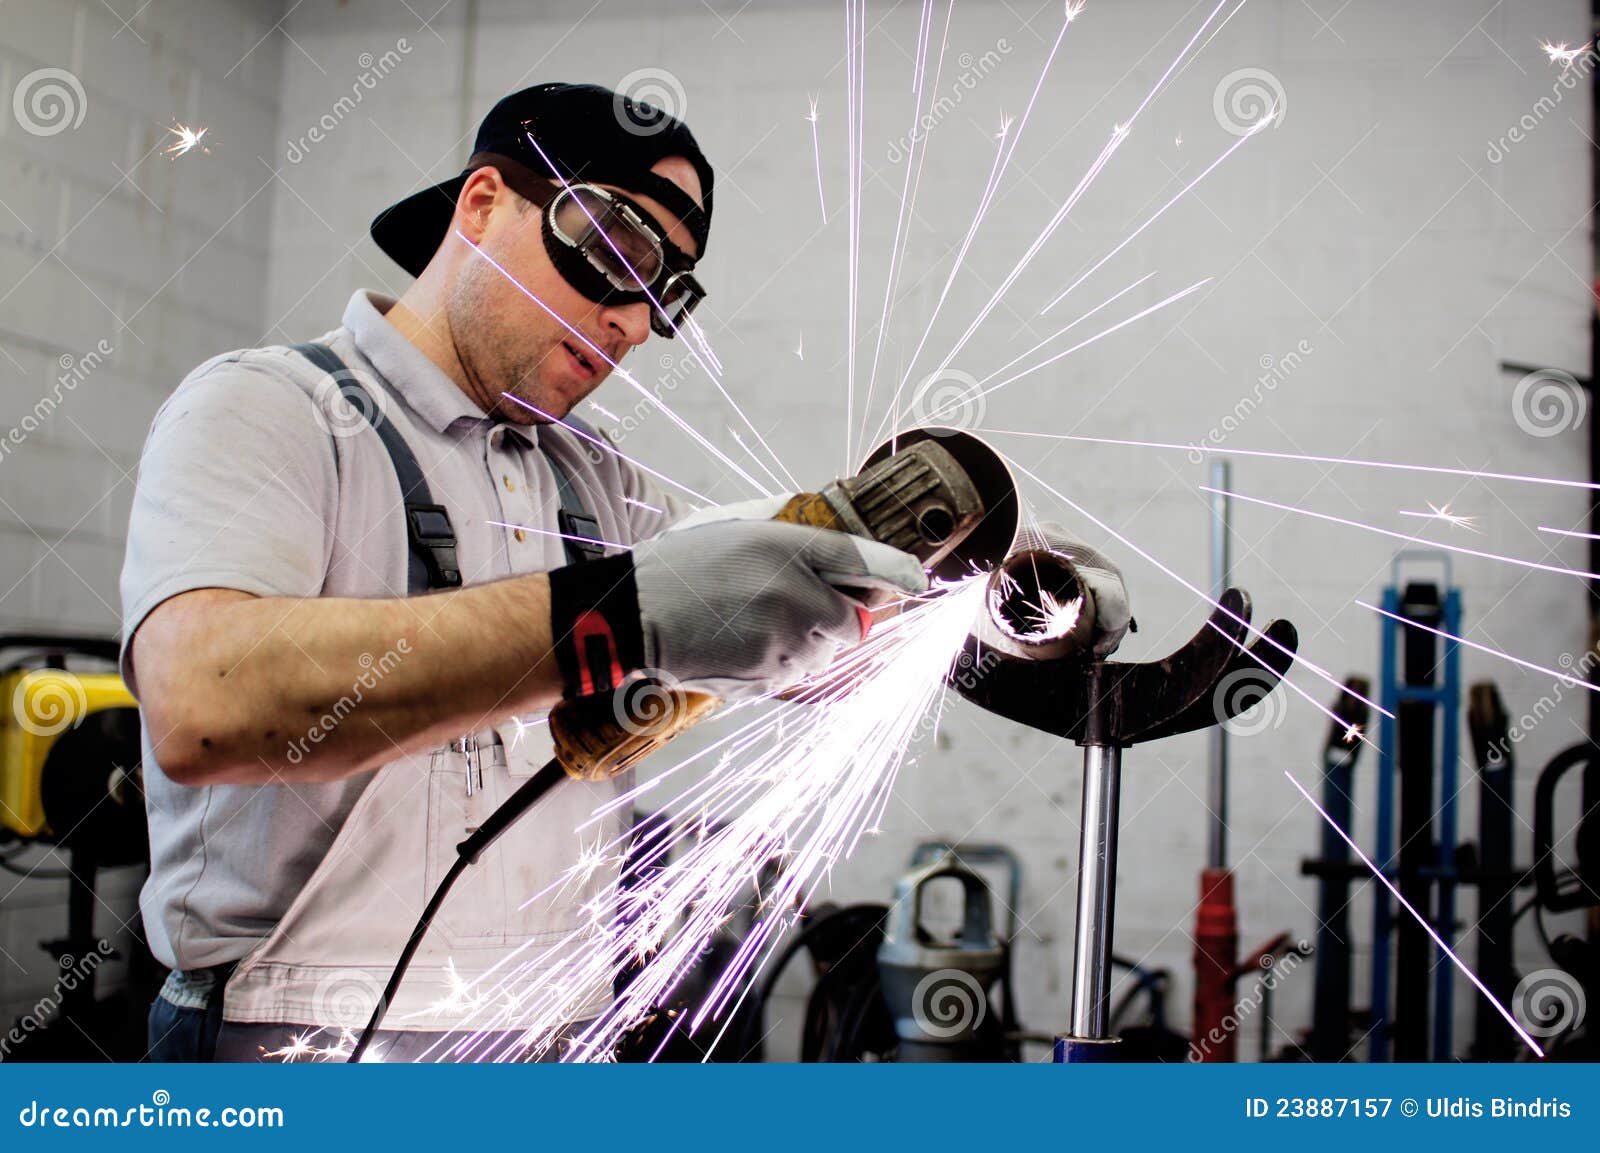 men at work grinding steel